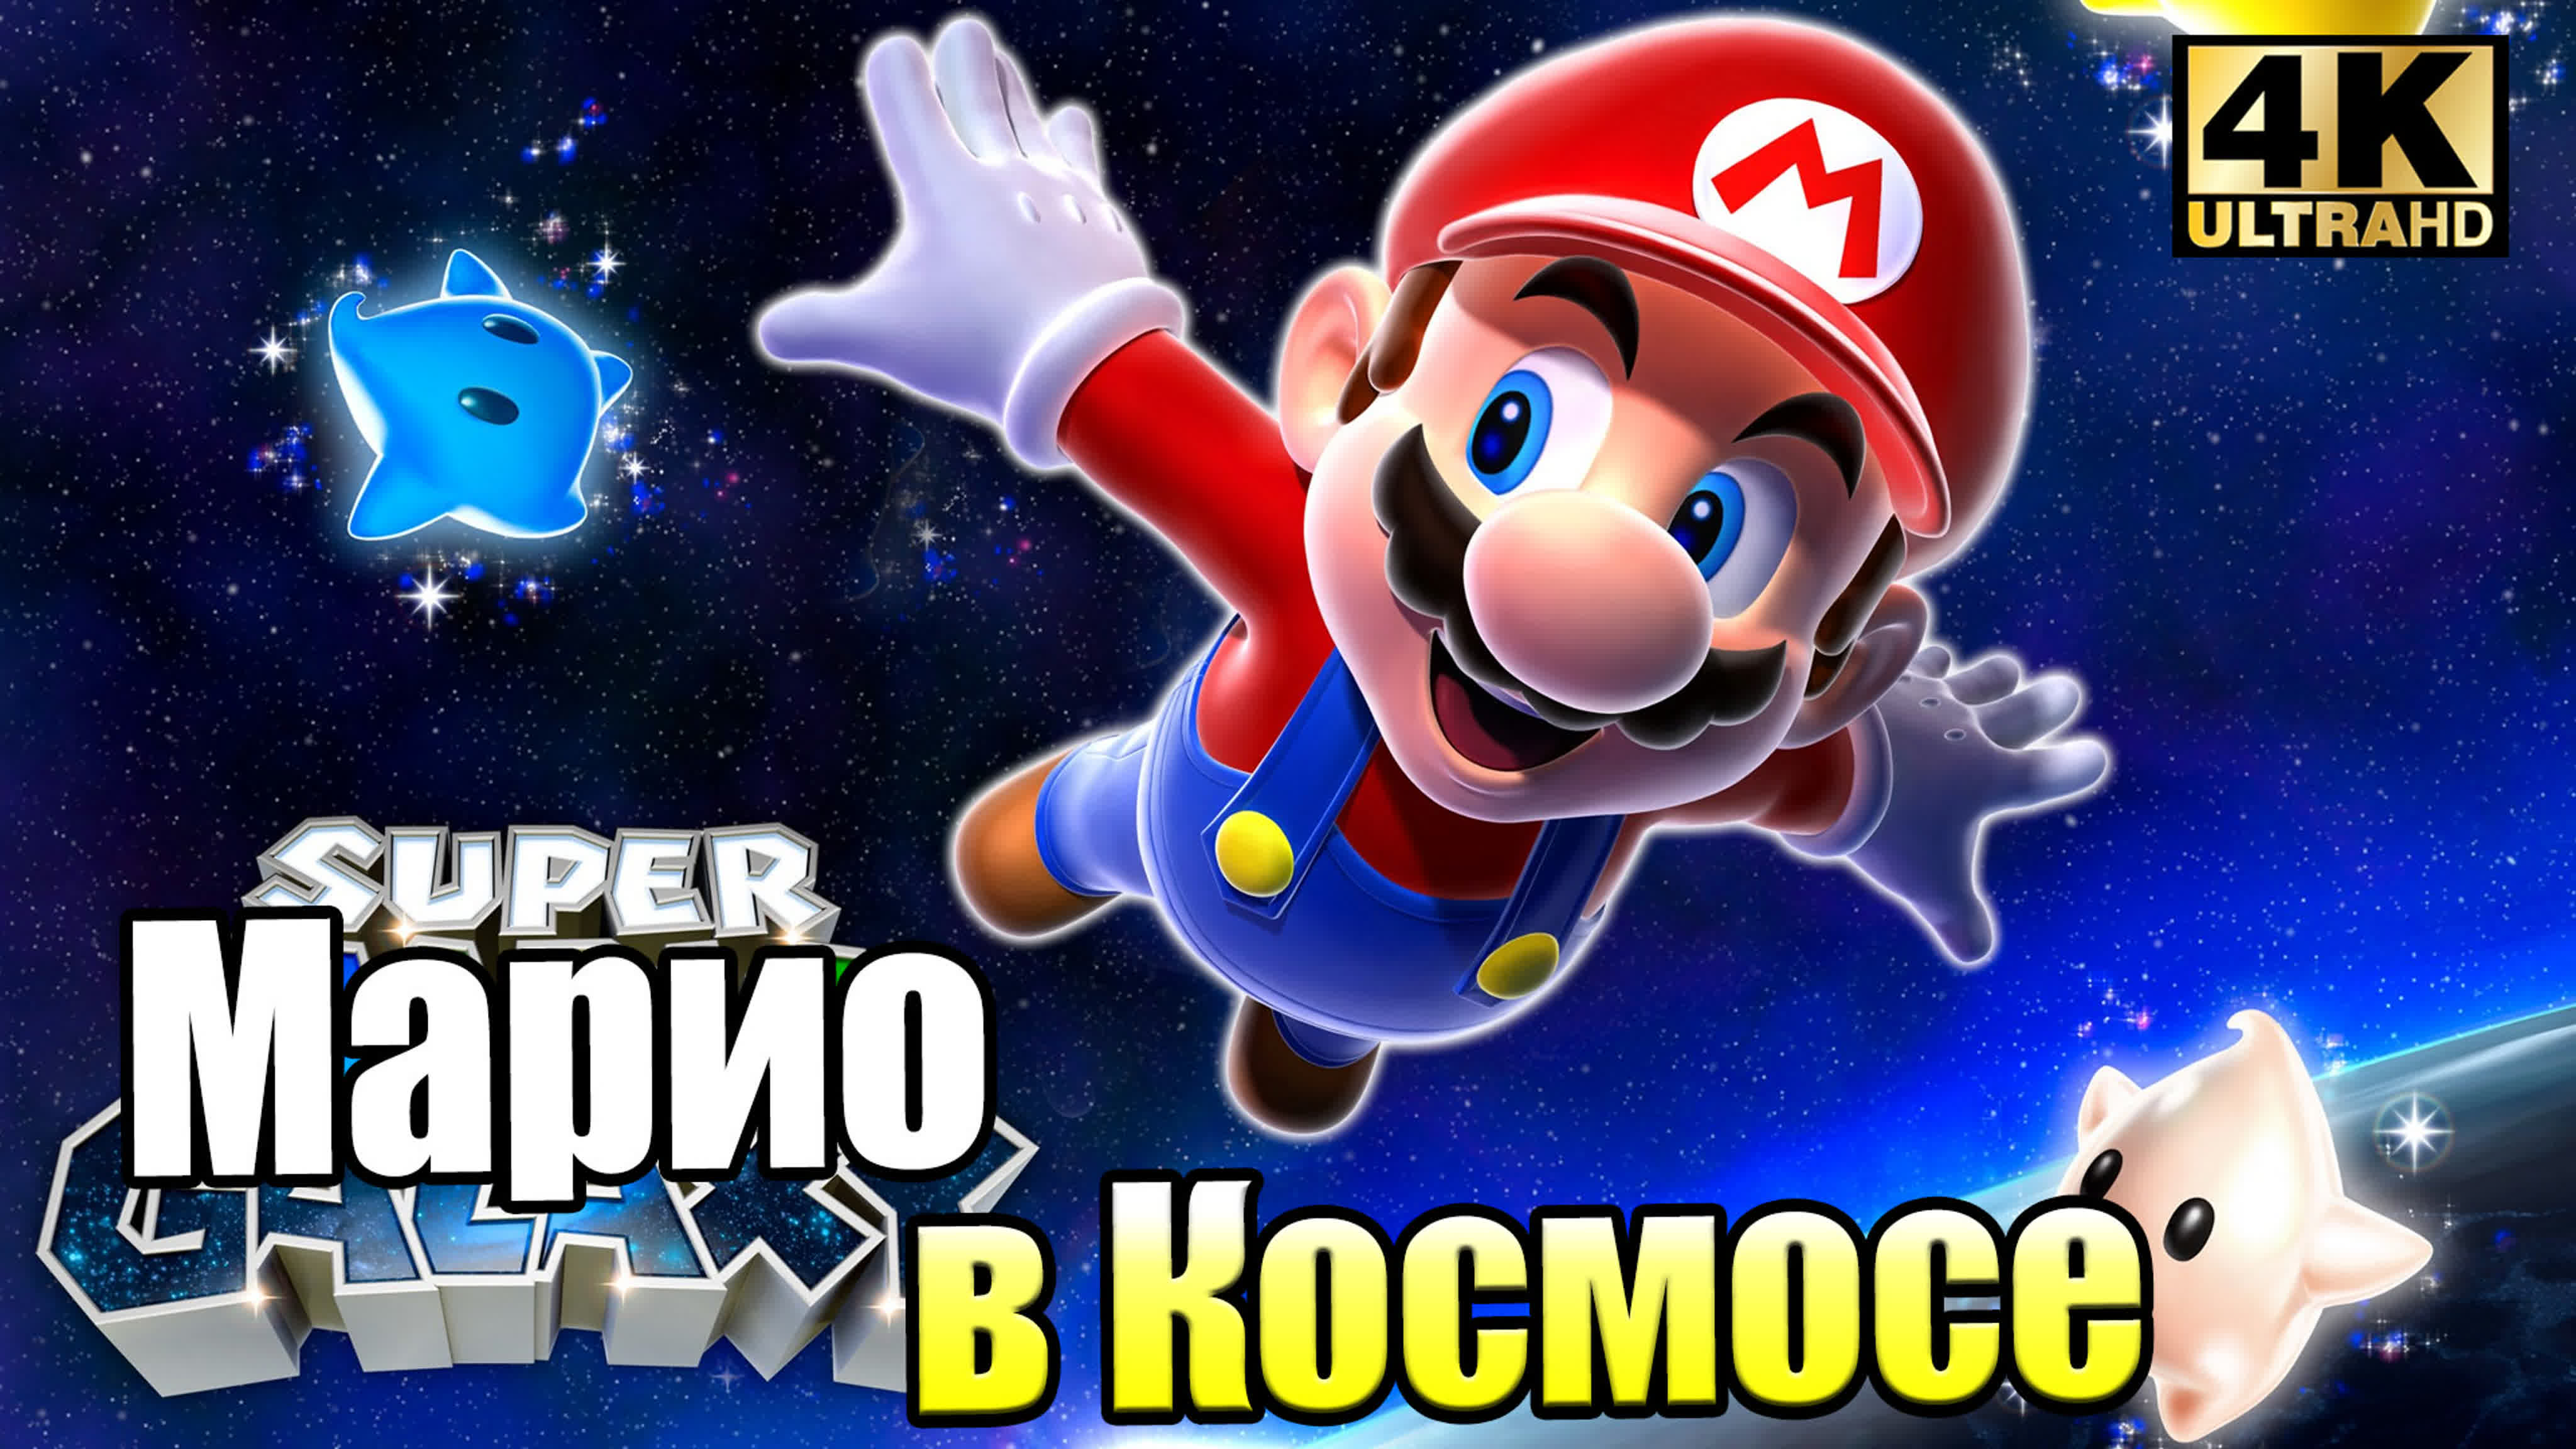 Super Mario Galaxy 1 (Wii) 4K